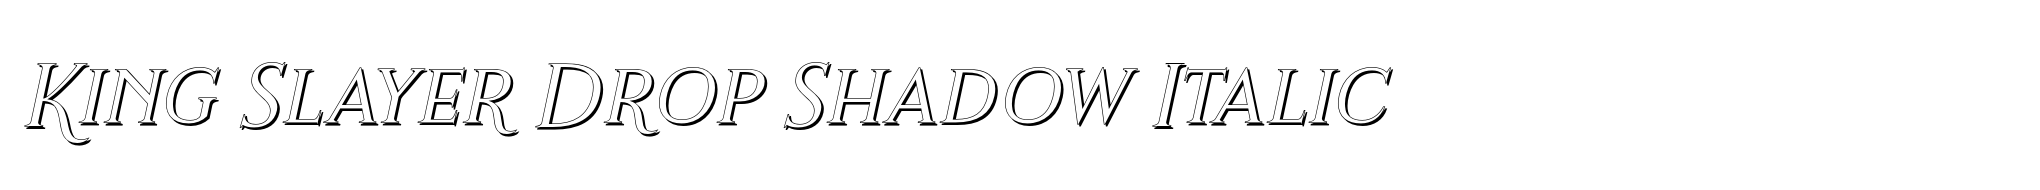 King Slayer Drop Shadow Italic image